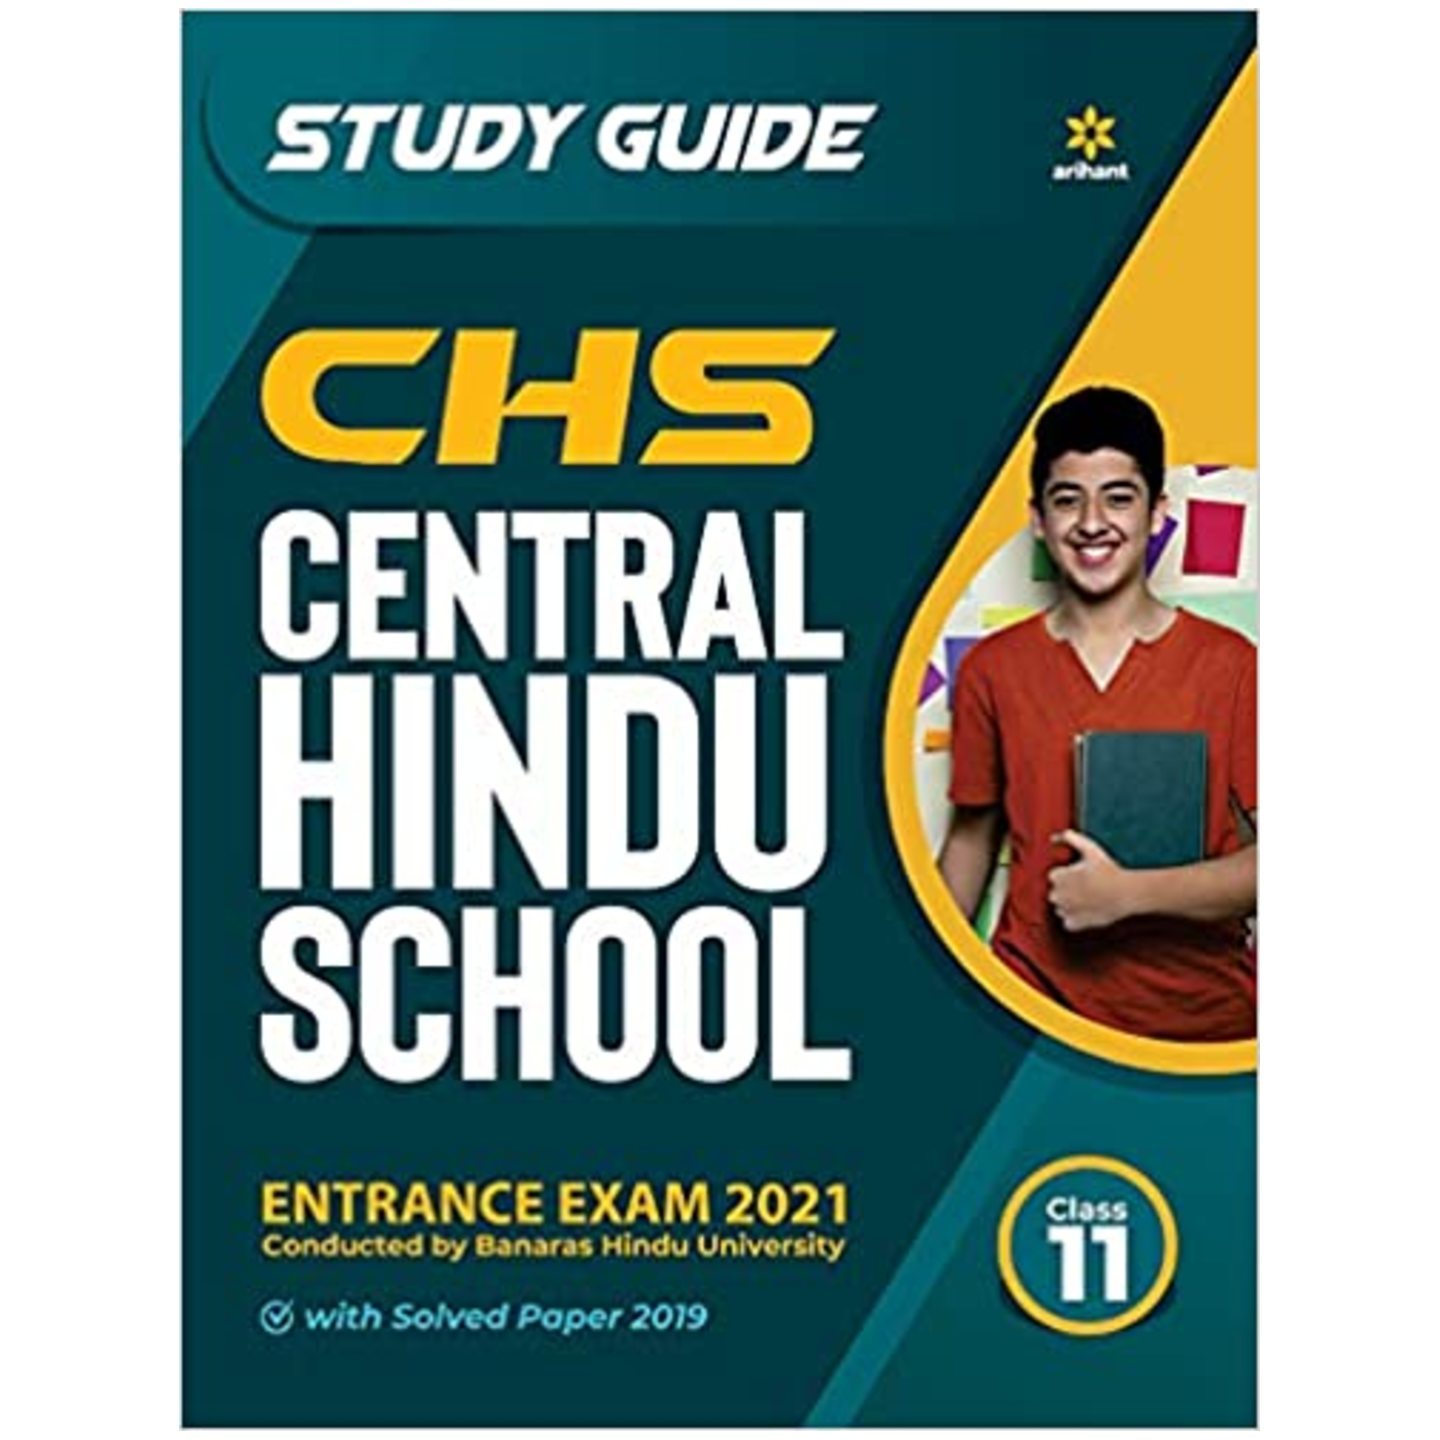 ARIHANT CHS Central hindu guide class 11